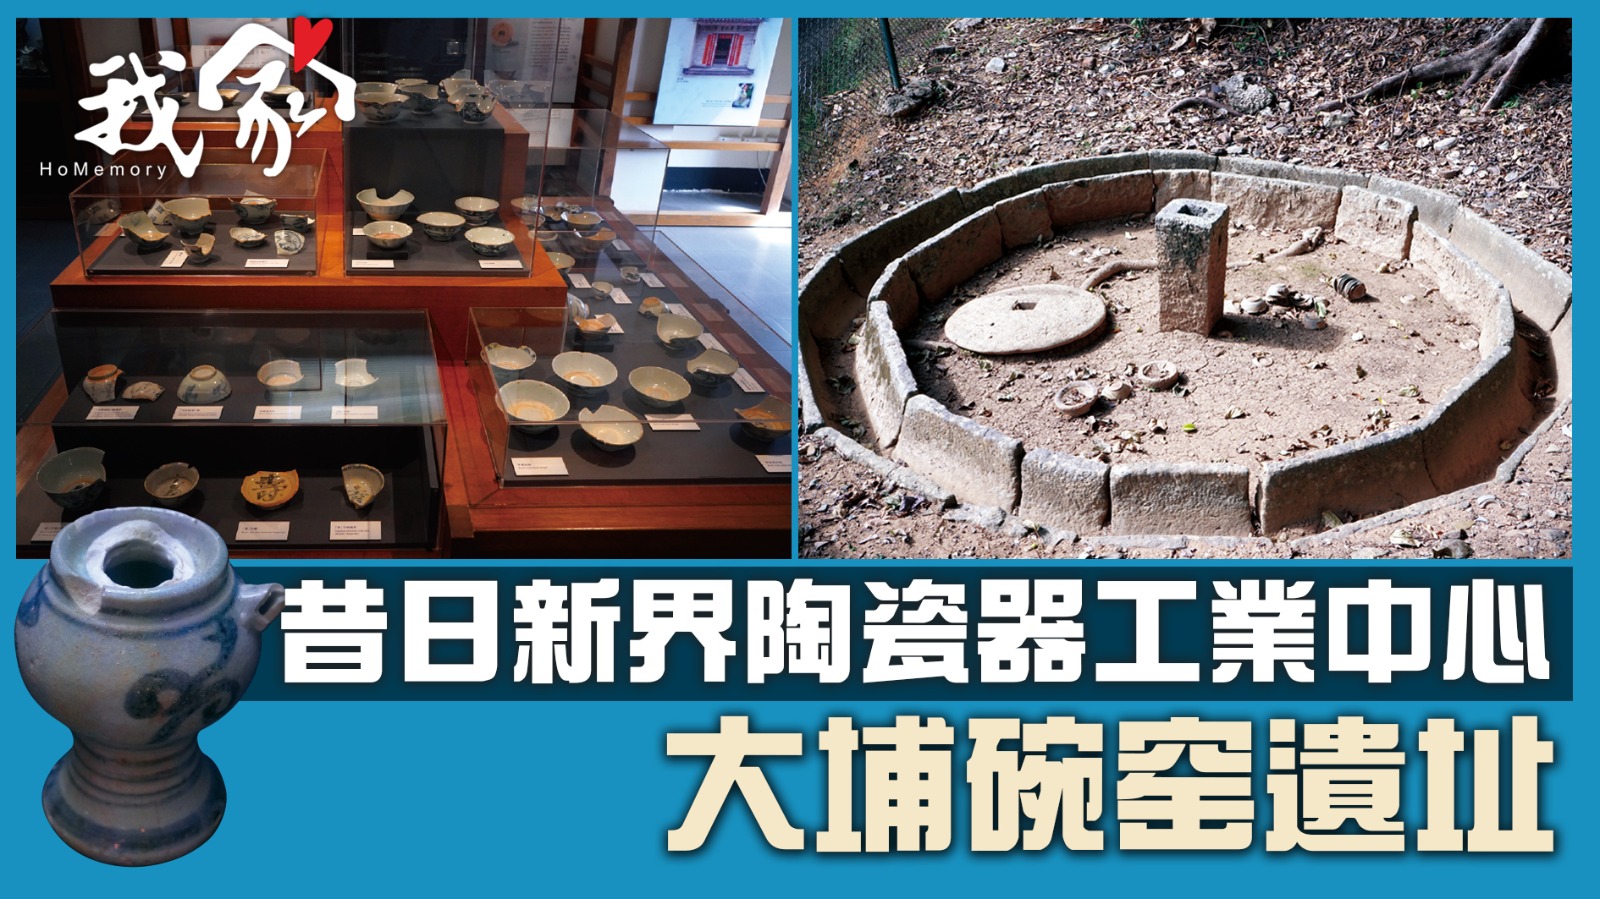 大埔碗窑遺址──昔日新界陶瓷器工業中心